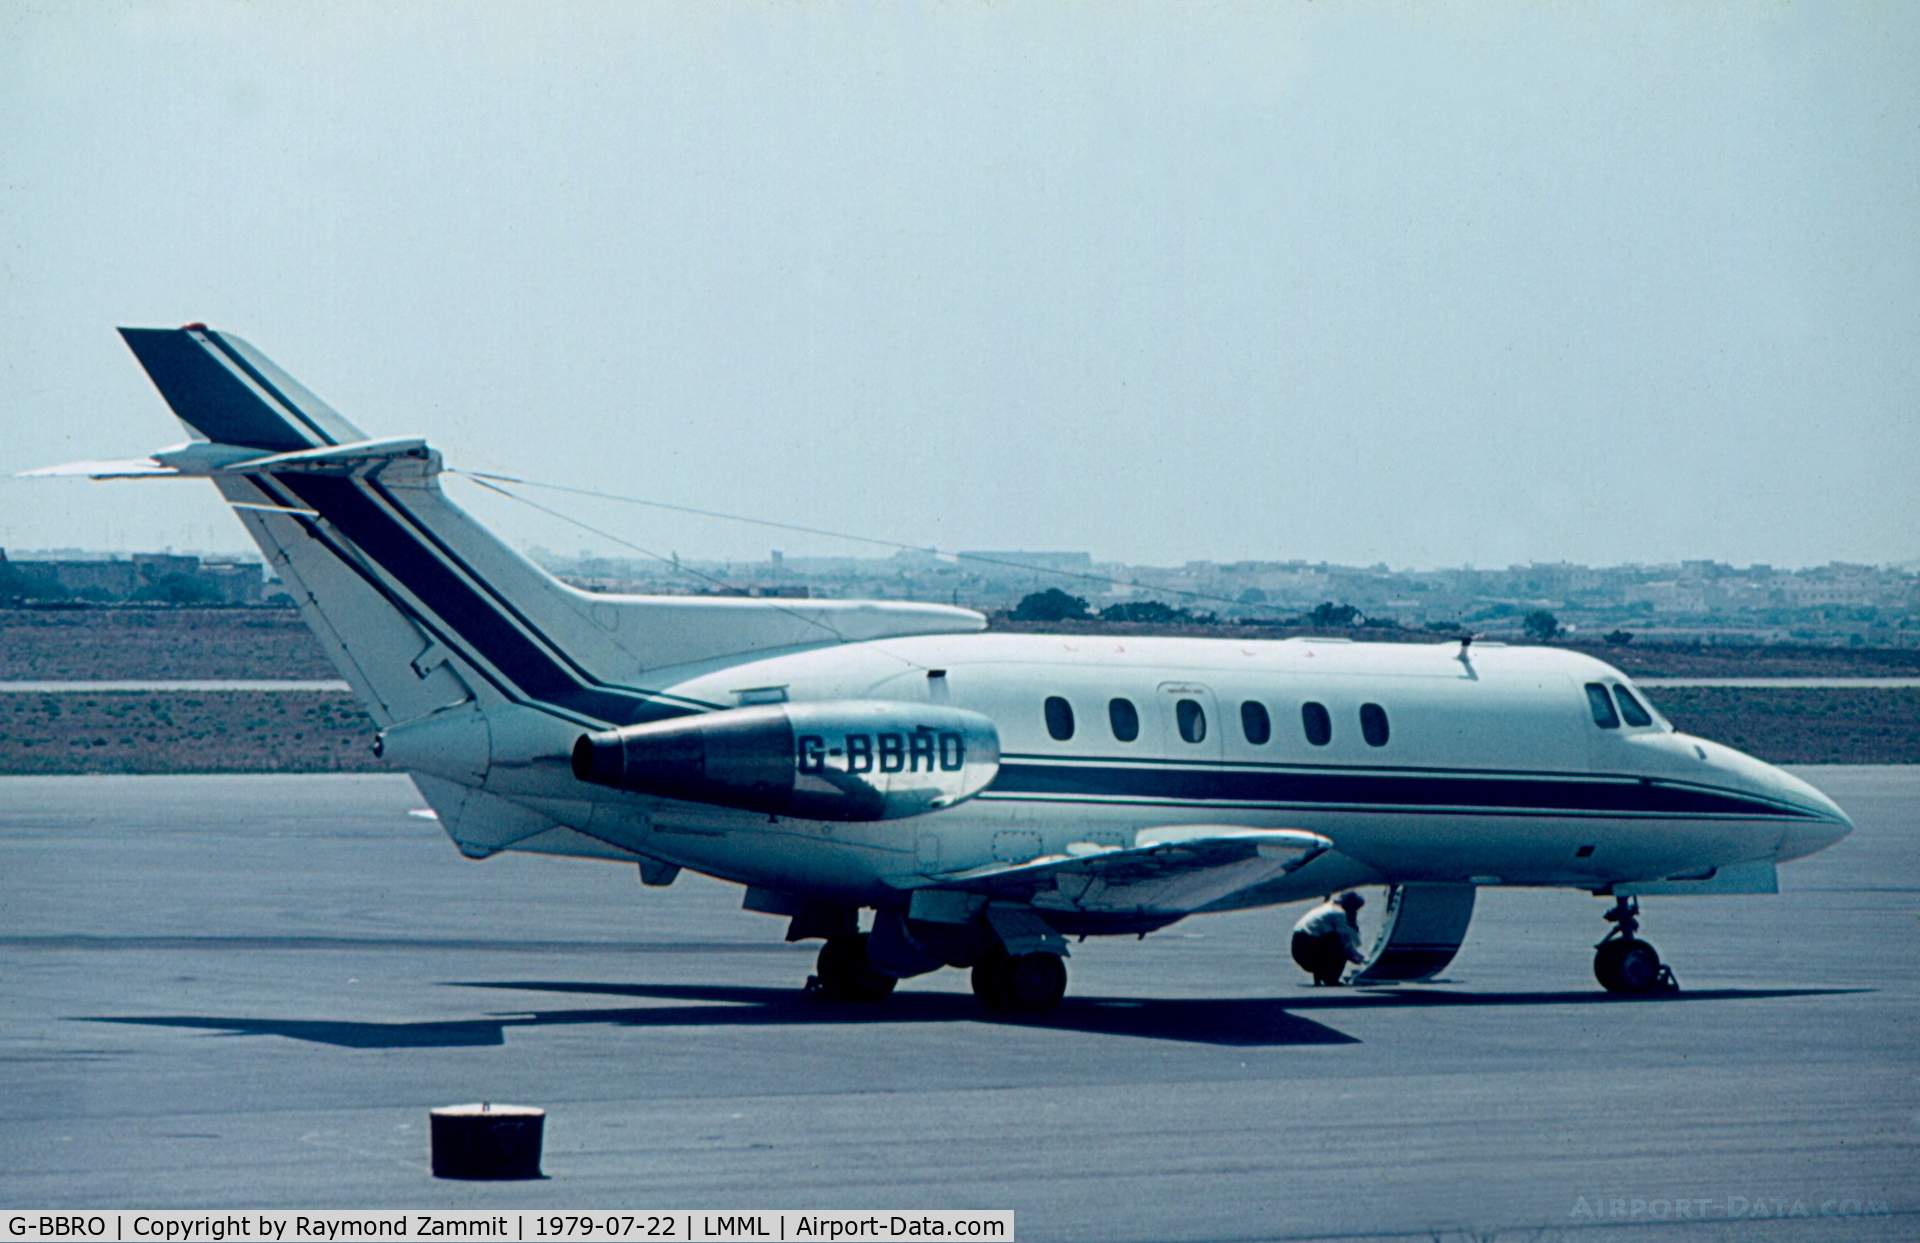 G-BBRO, 1974 Hawker Siddeley HS.125 Series 600B C/N 256042, Hawker Siddeley 125 G-BBRO McAlpine Aviation